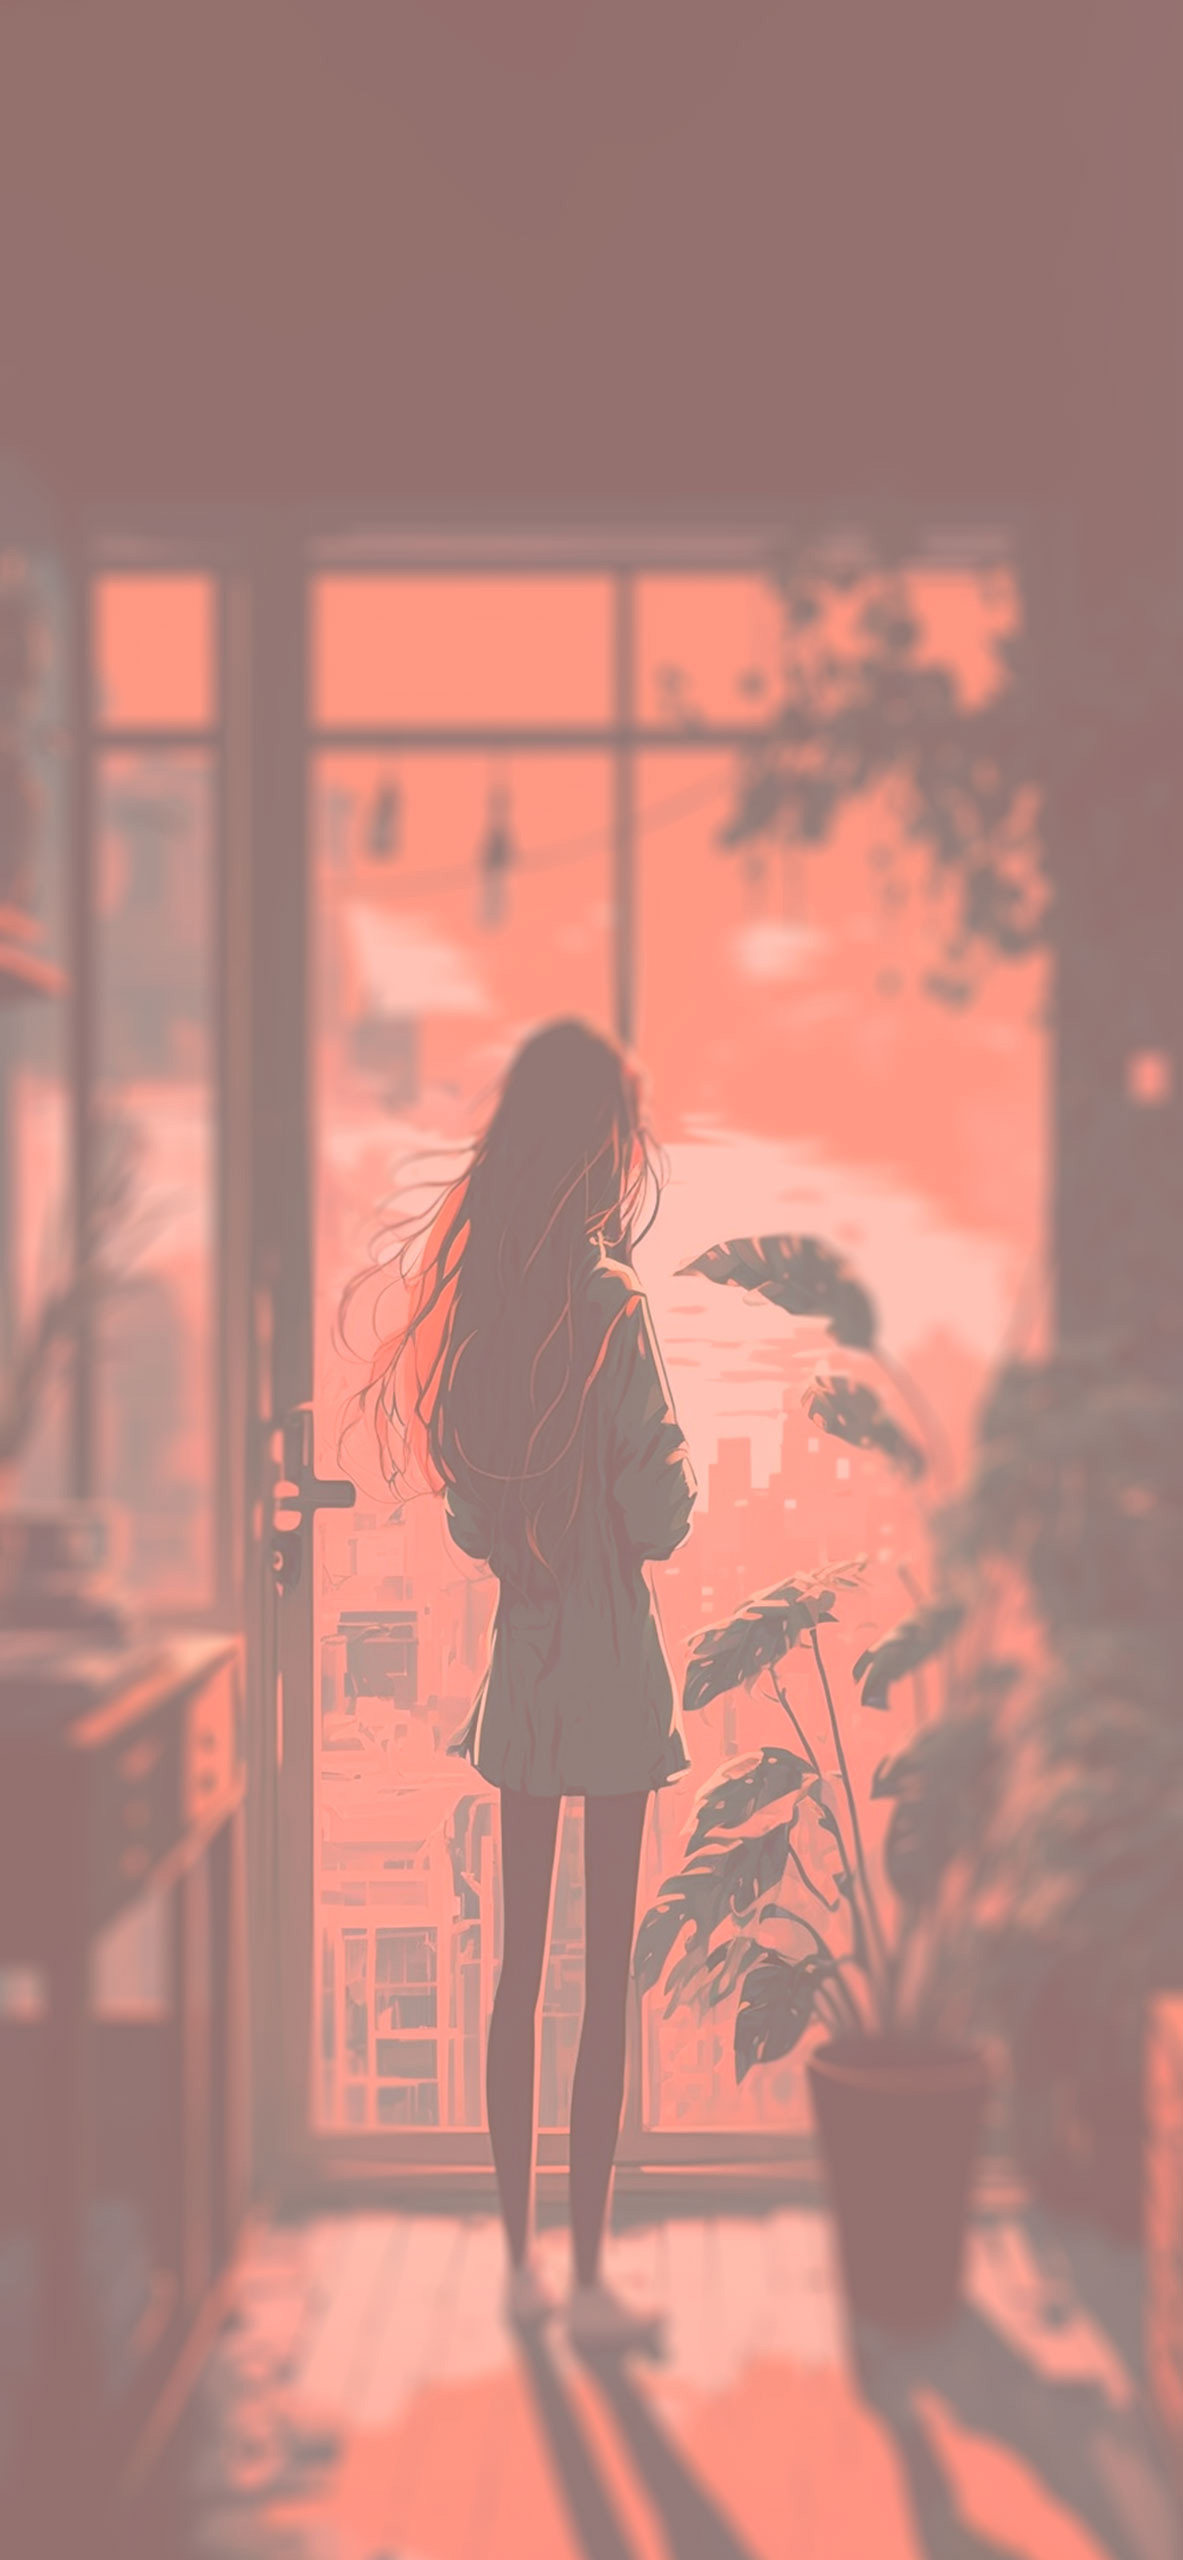 girl on balcony aesthetic background